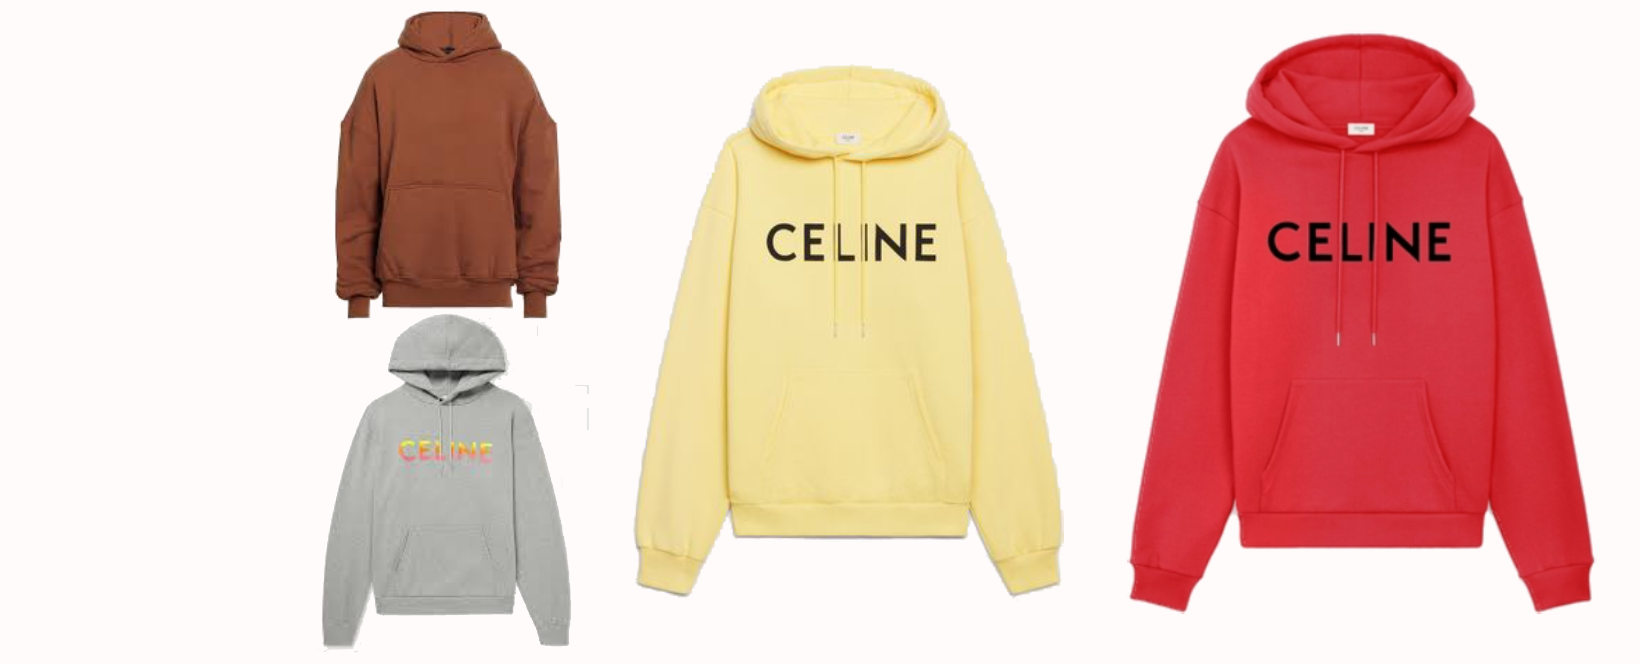 Celine Jacket Clothing Timeless Elegance and Modern Sophistication